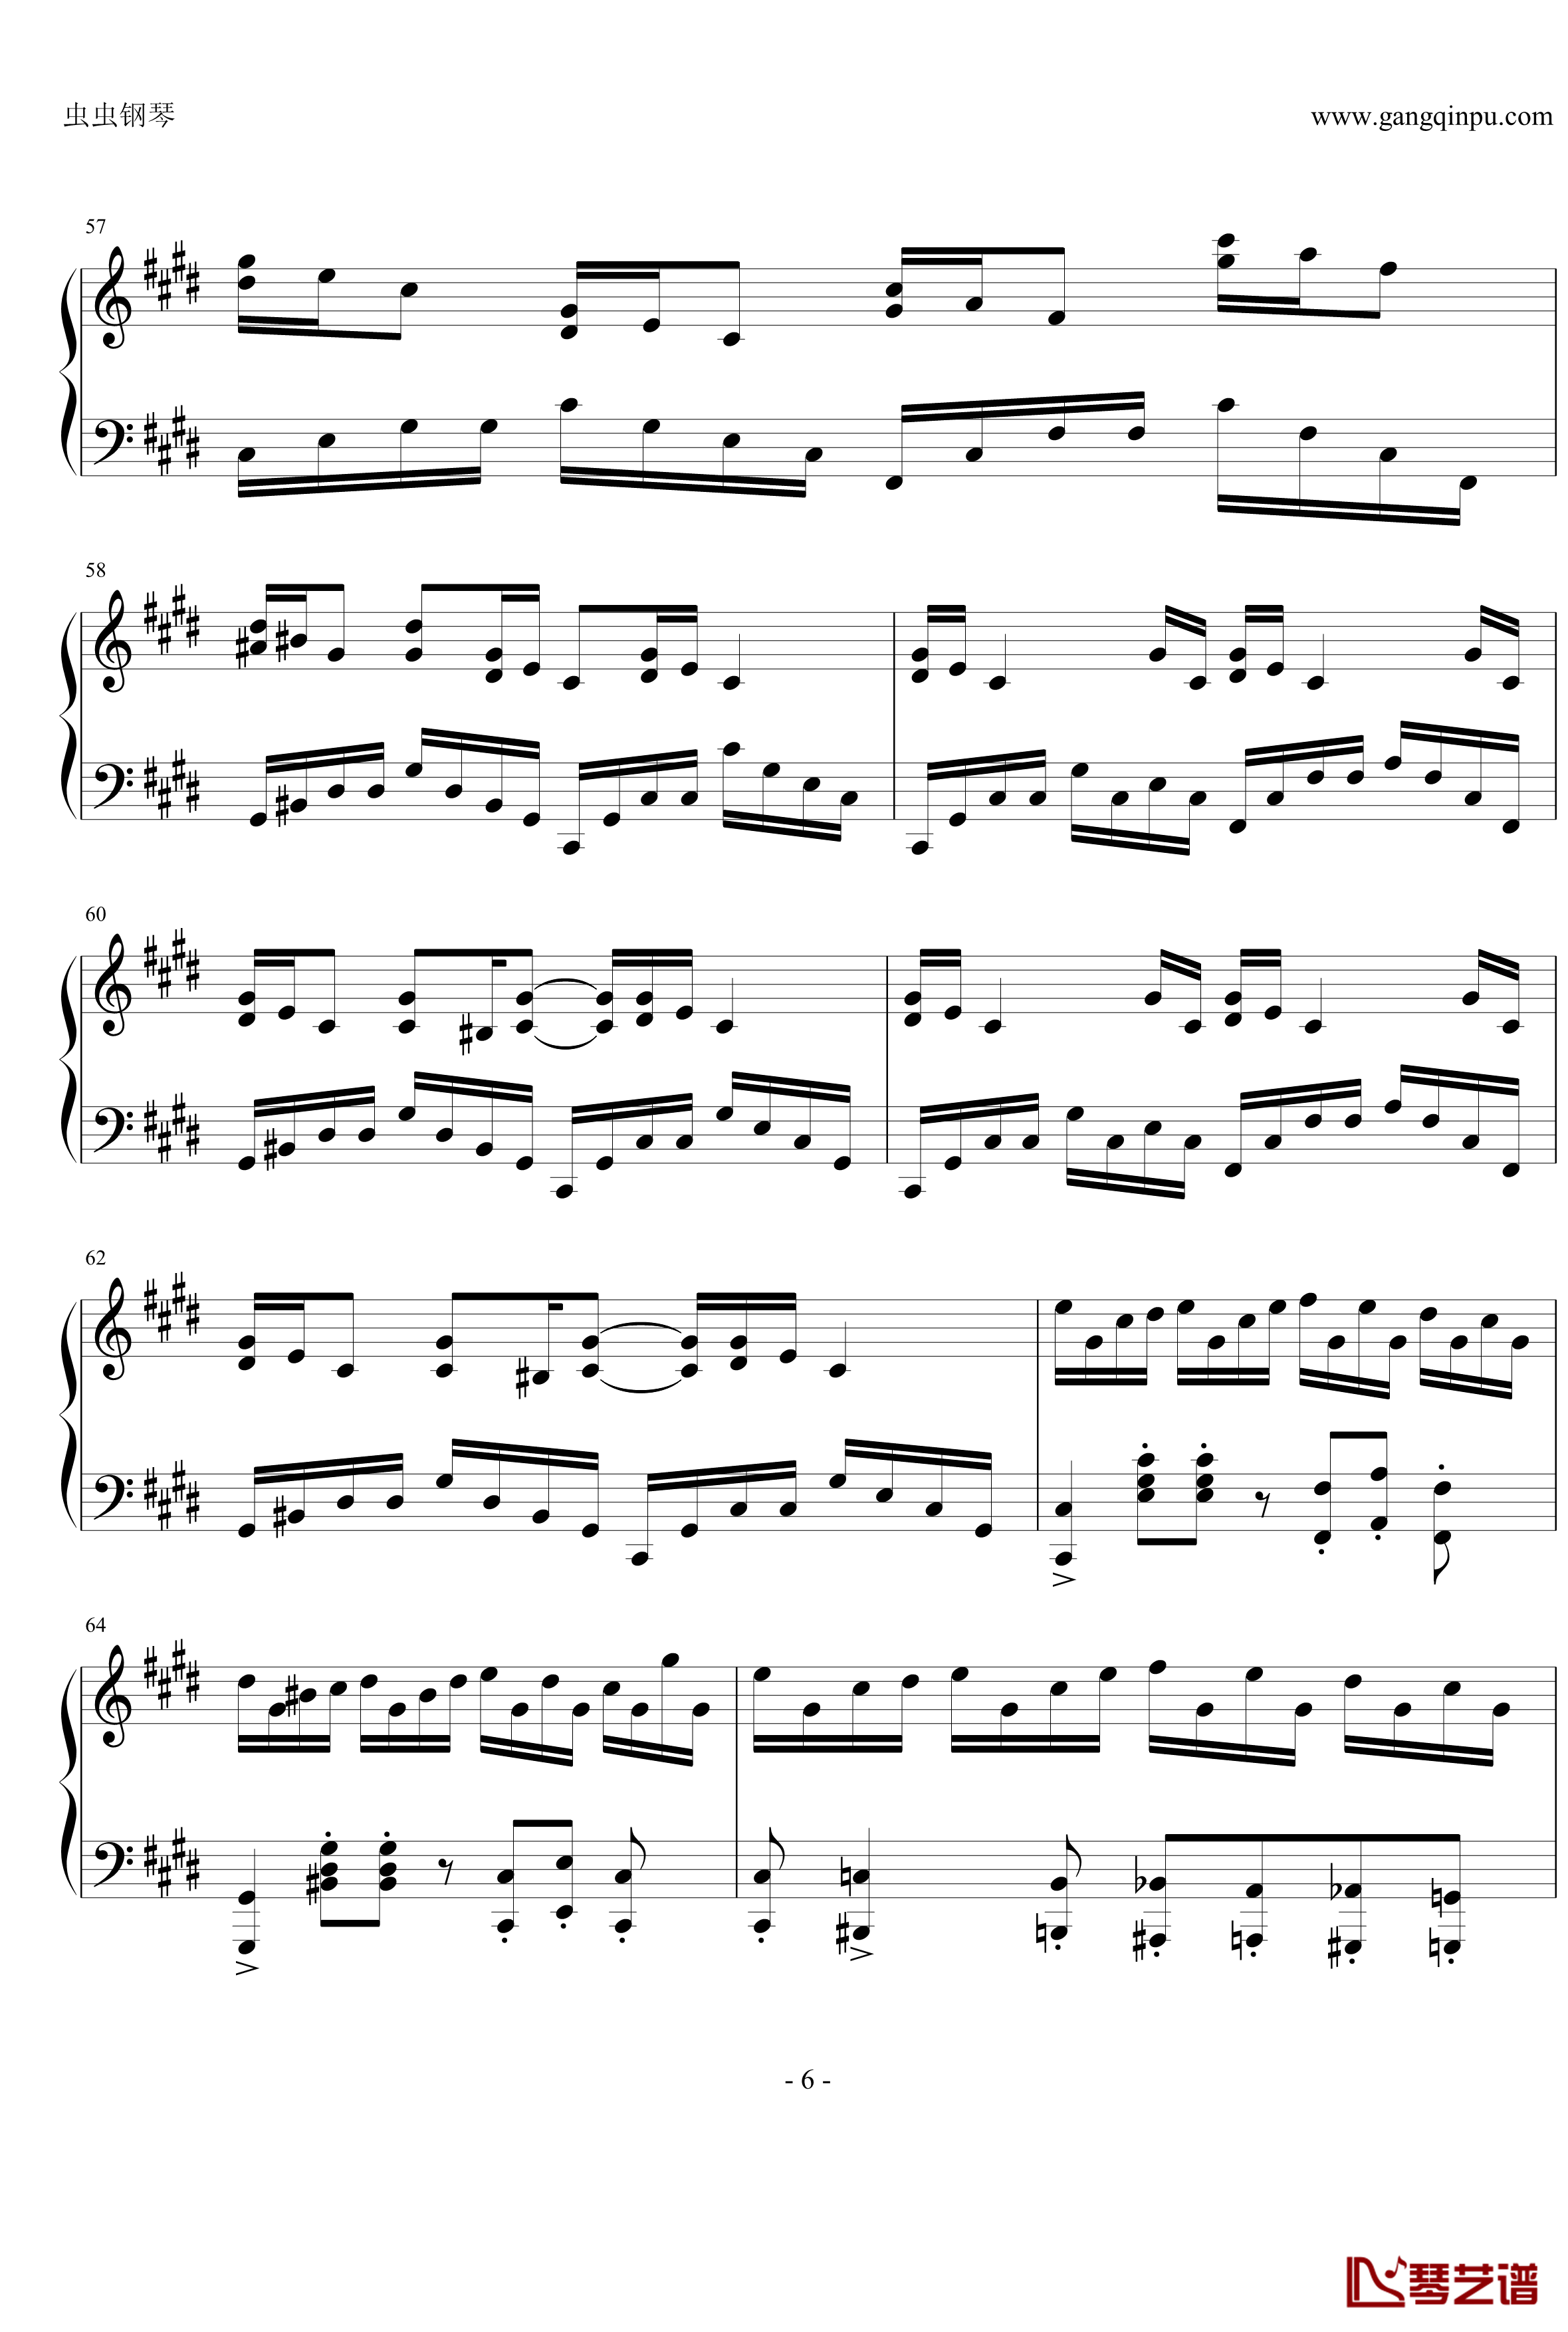 克罗地亚狂想曲钢琴谱-改编独奏版-马克西姆-Maksim·Mrvica6